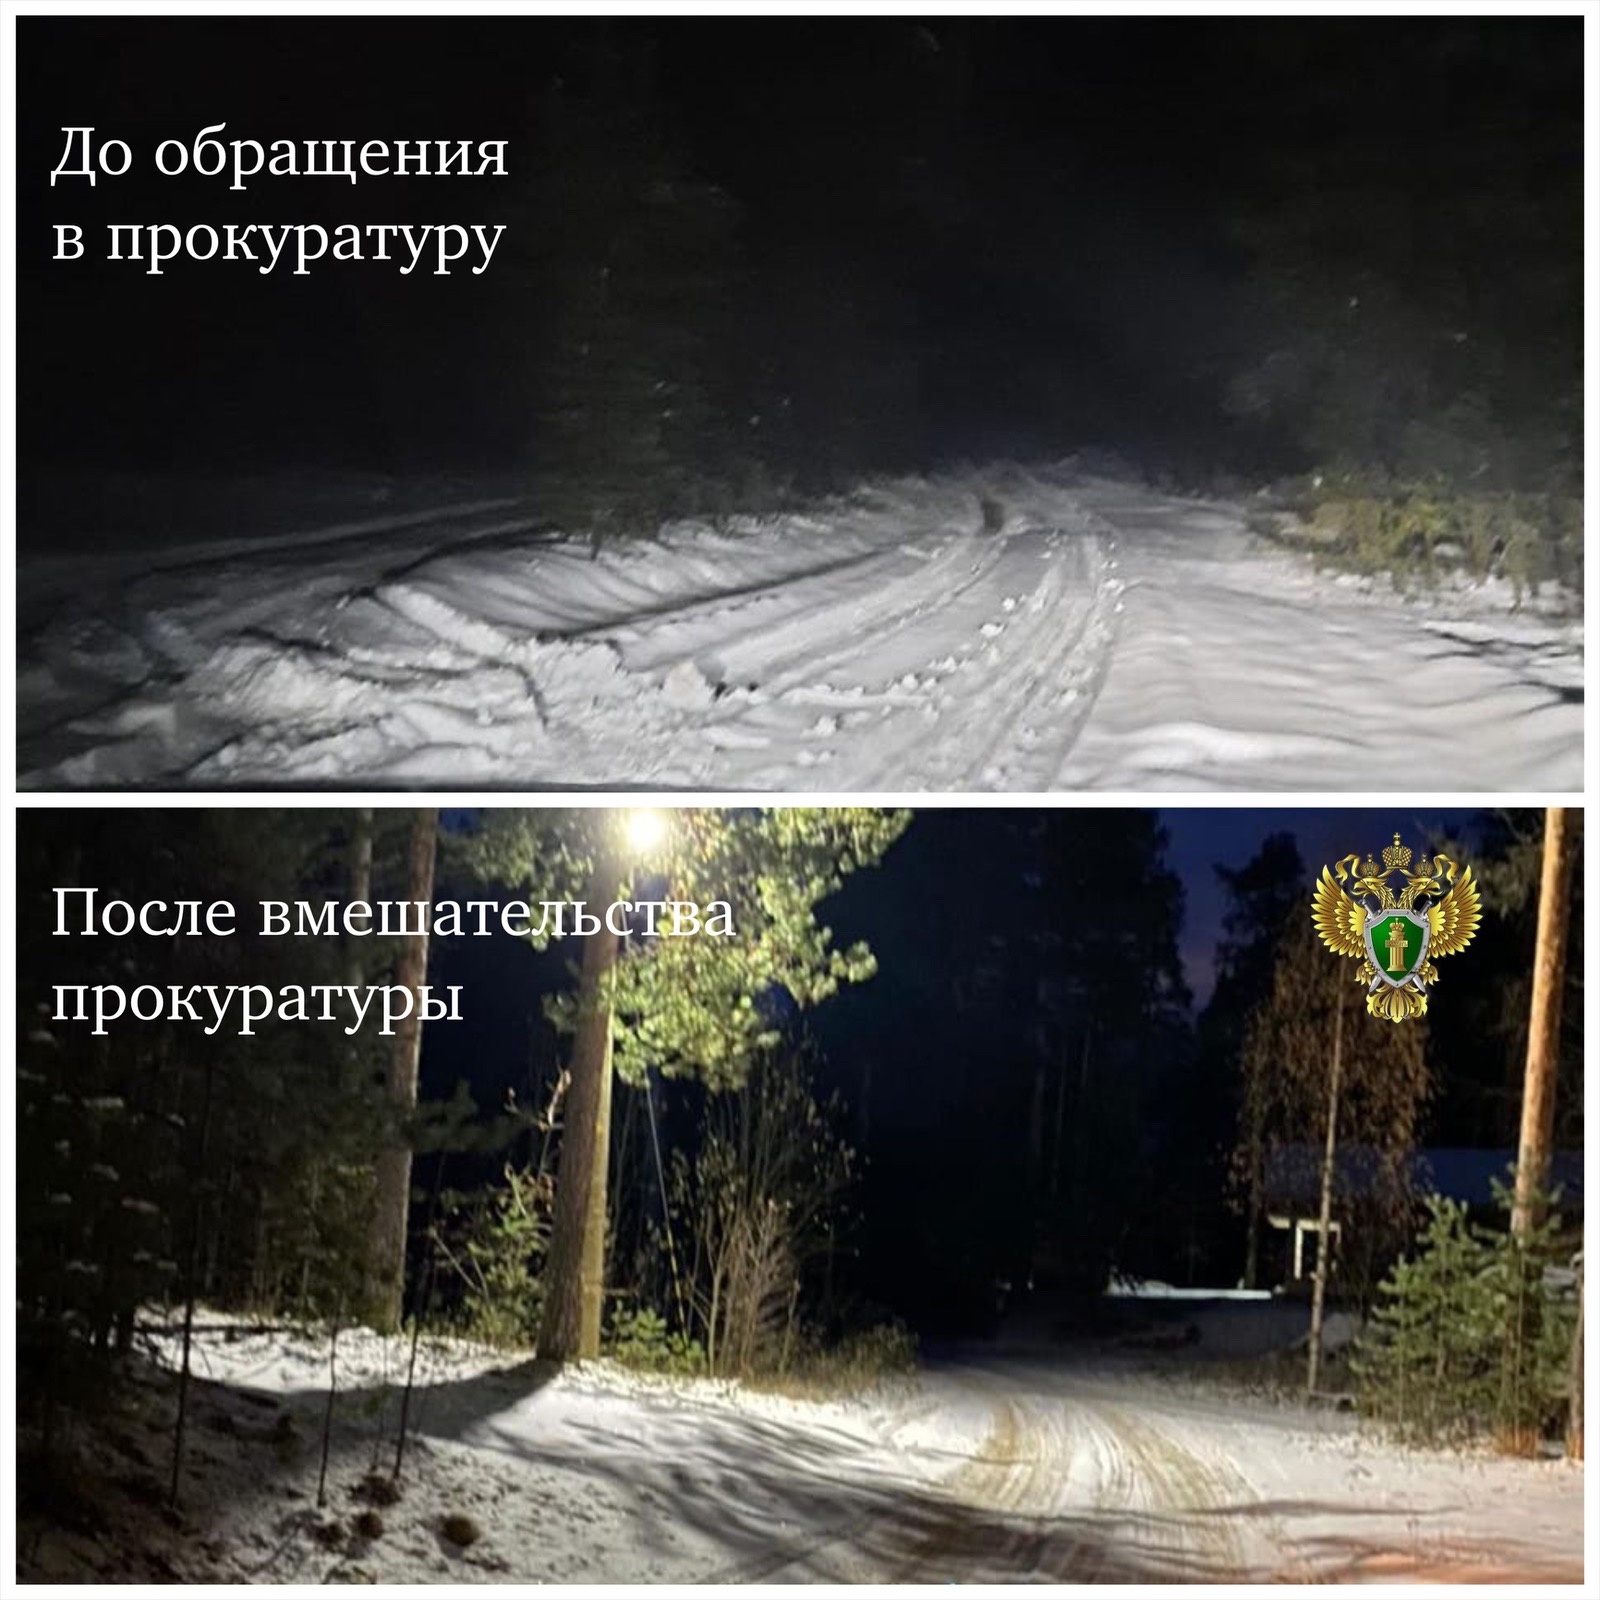 Из-за плохого освещения и нечищенной дороги прокуратура района Карелии встала на защиту прав местных жителей  